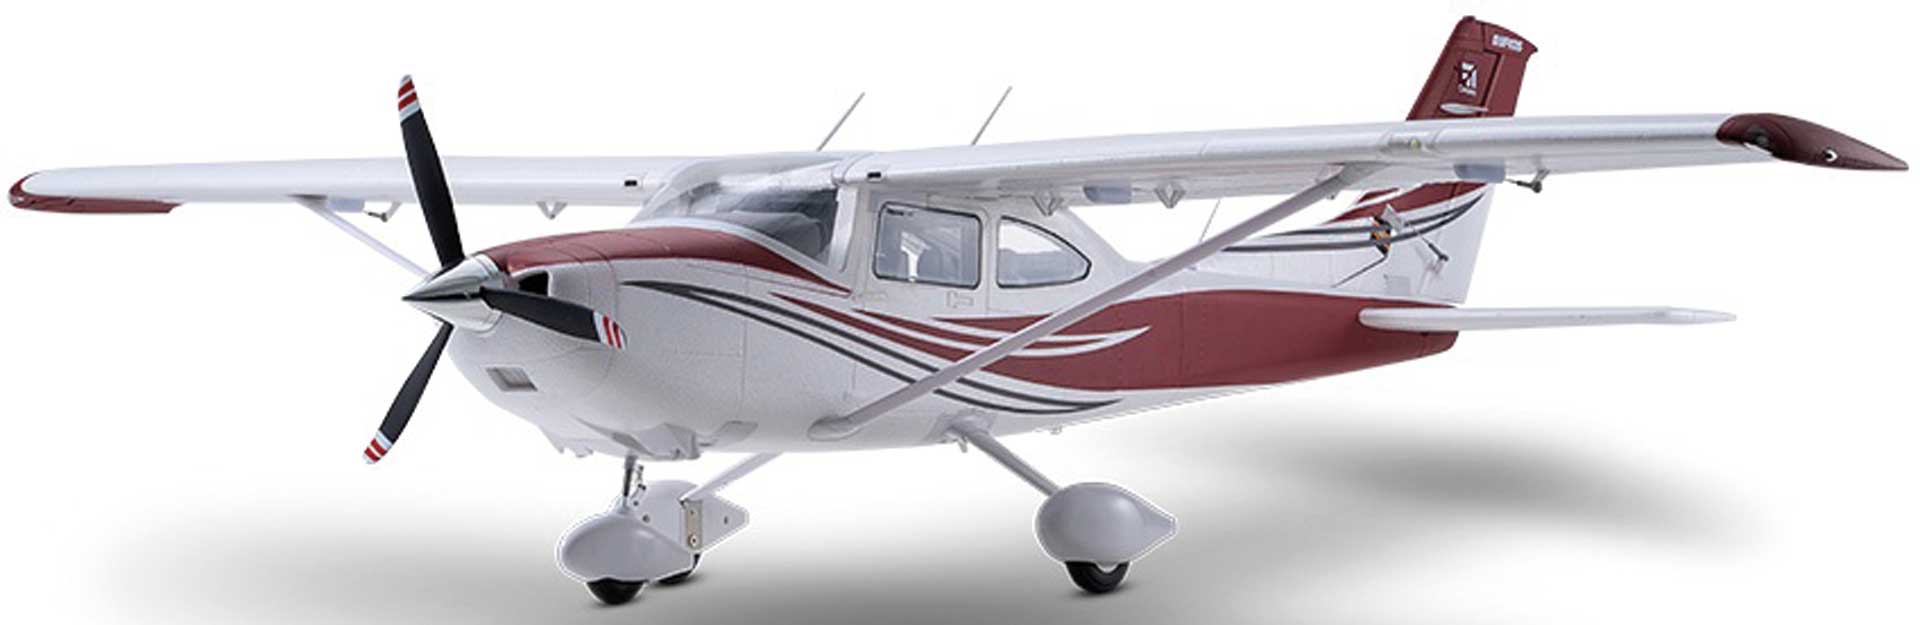 FMS Cessna 182 PNP rot - 150 cm